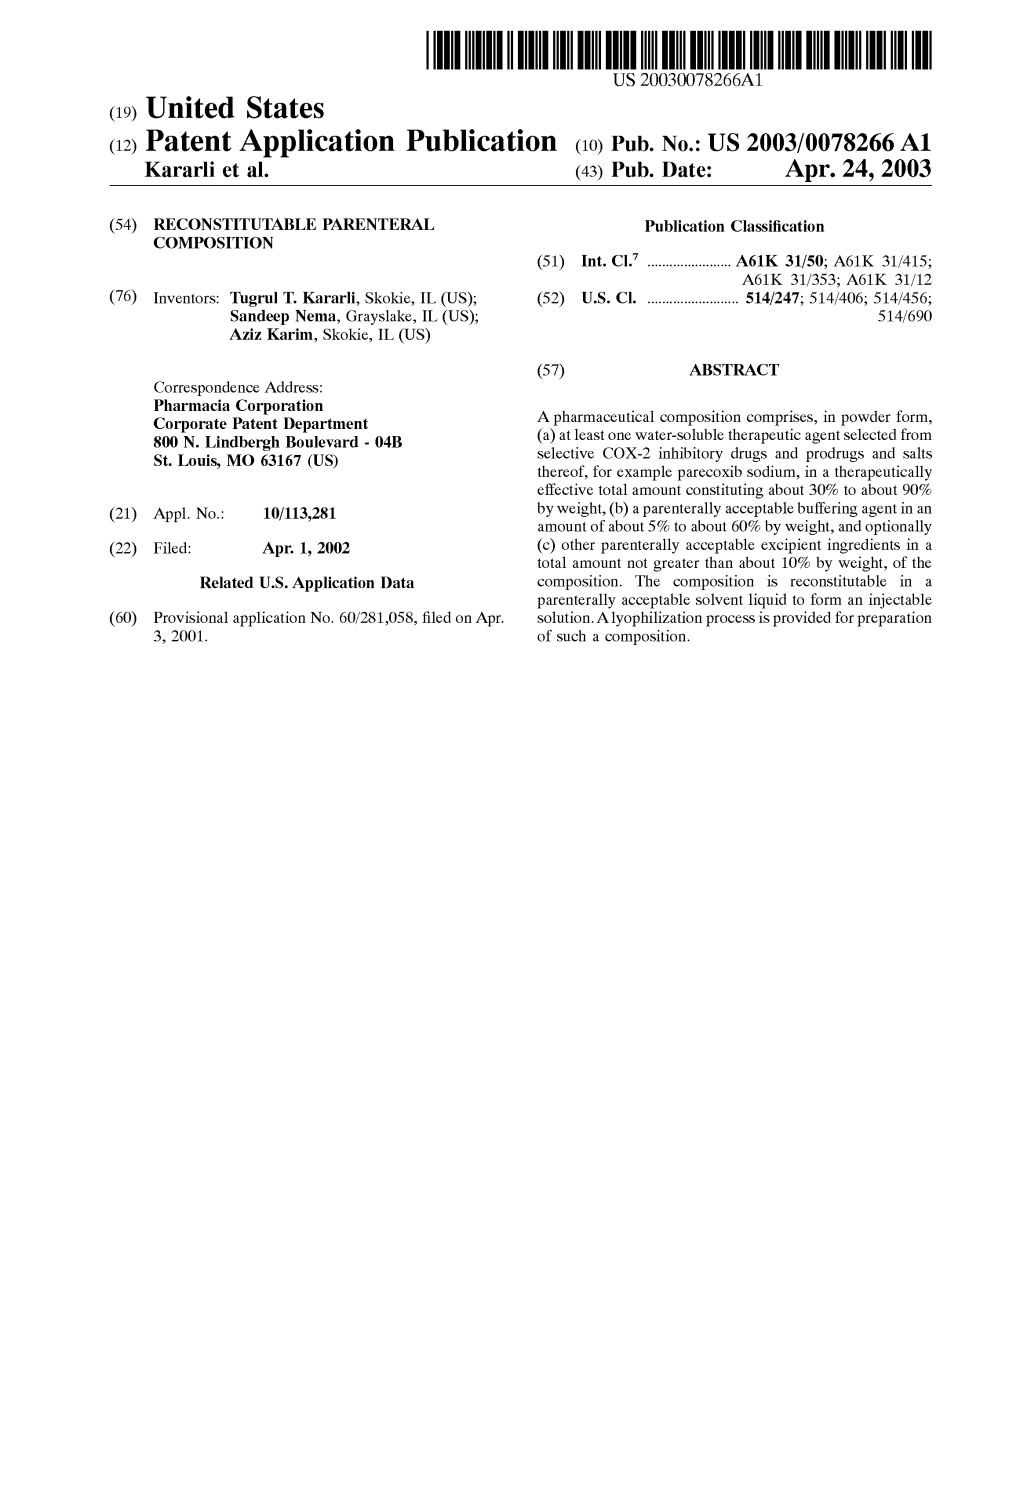 (12) Patent Application Publication (10) Pub. No.: US 2003/0078266A1 Kararli Et Al